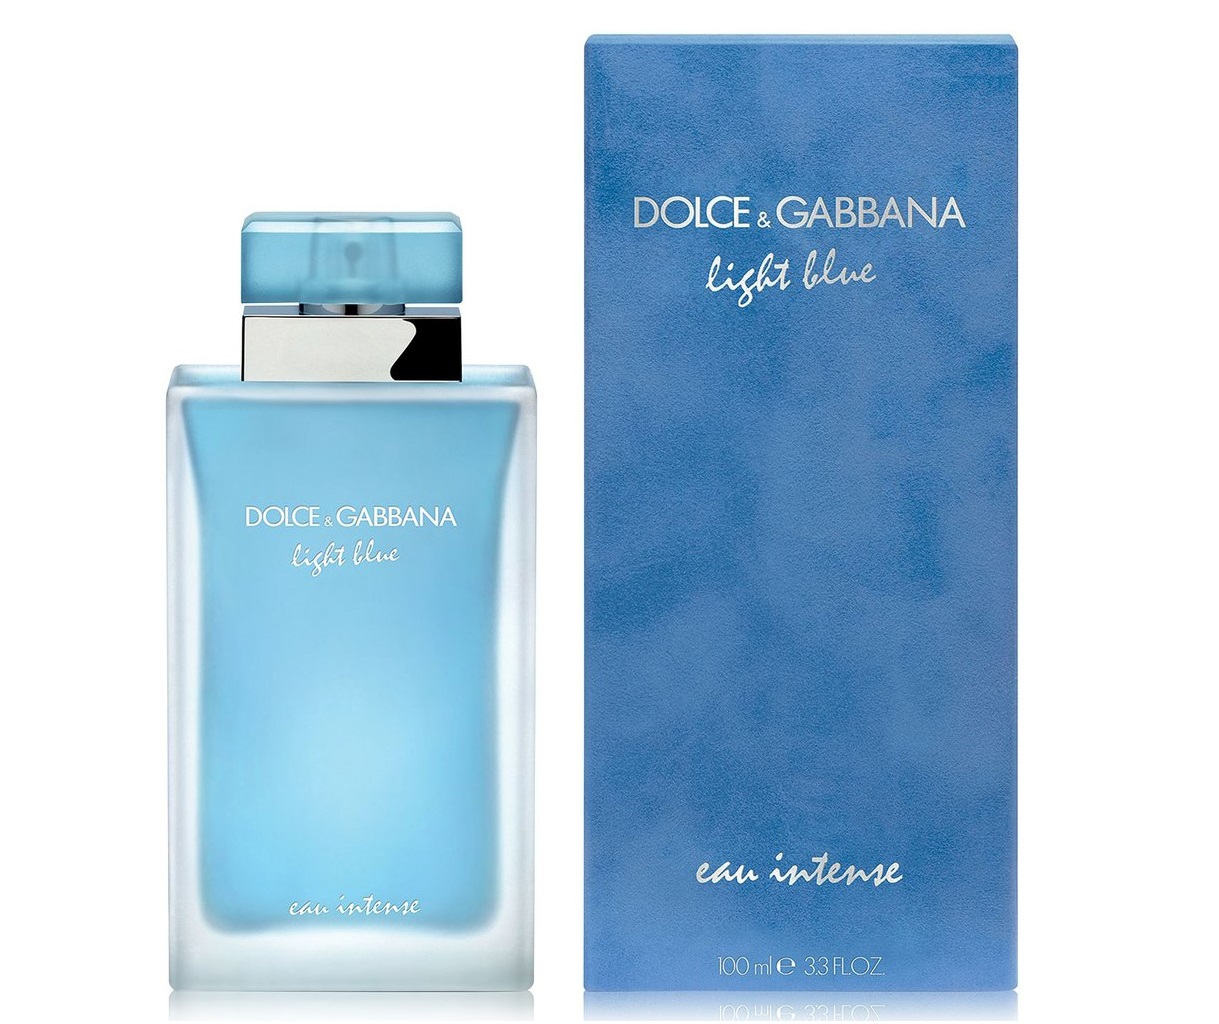 dolce and gabanna light blue women